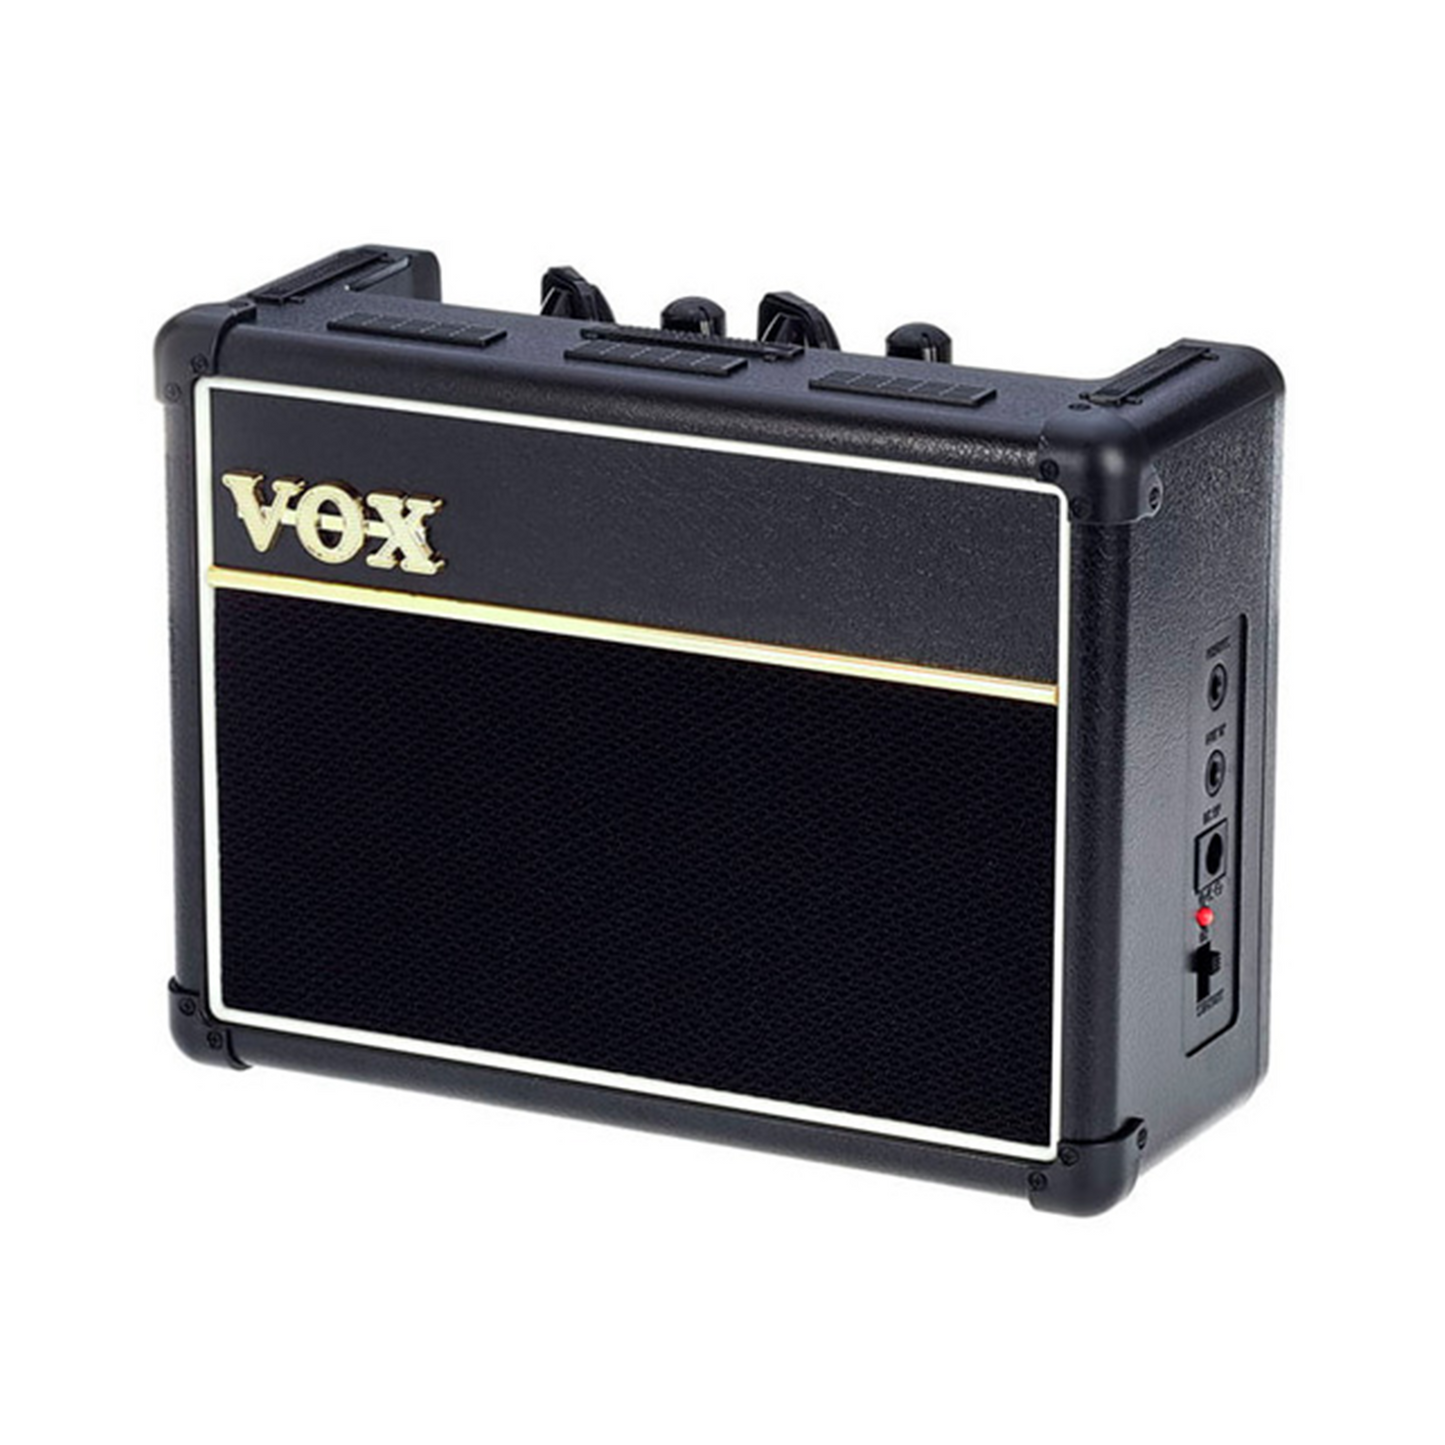 Vox AC2 Bass Rhythm Vox